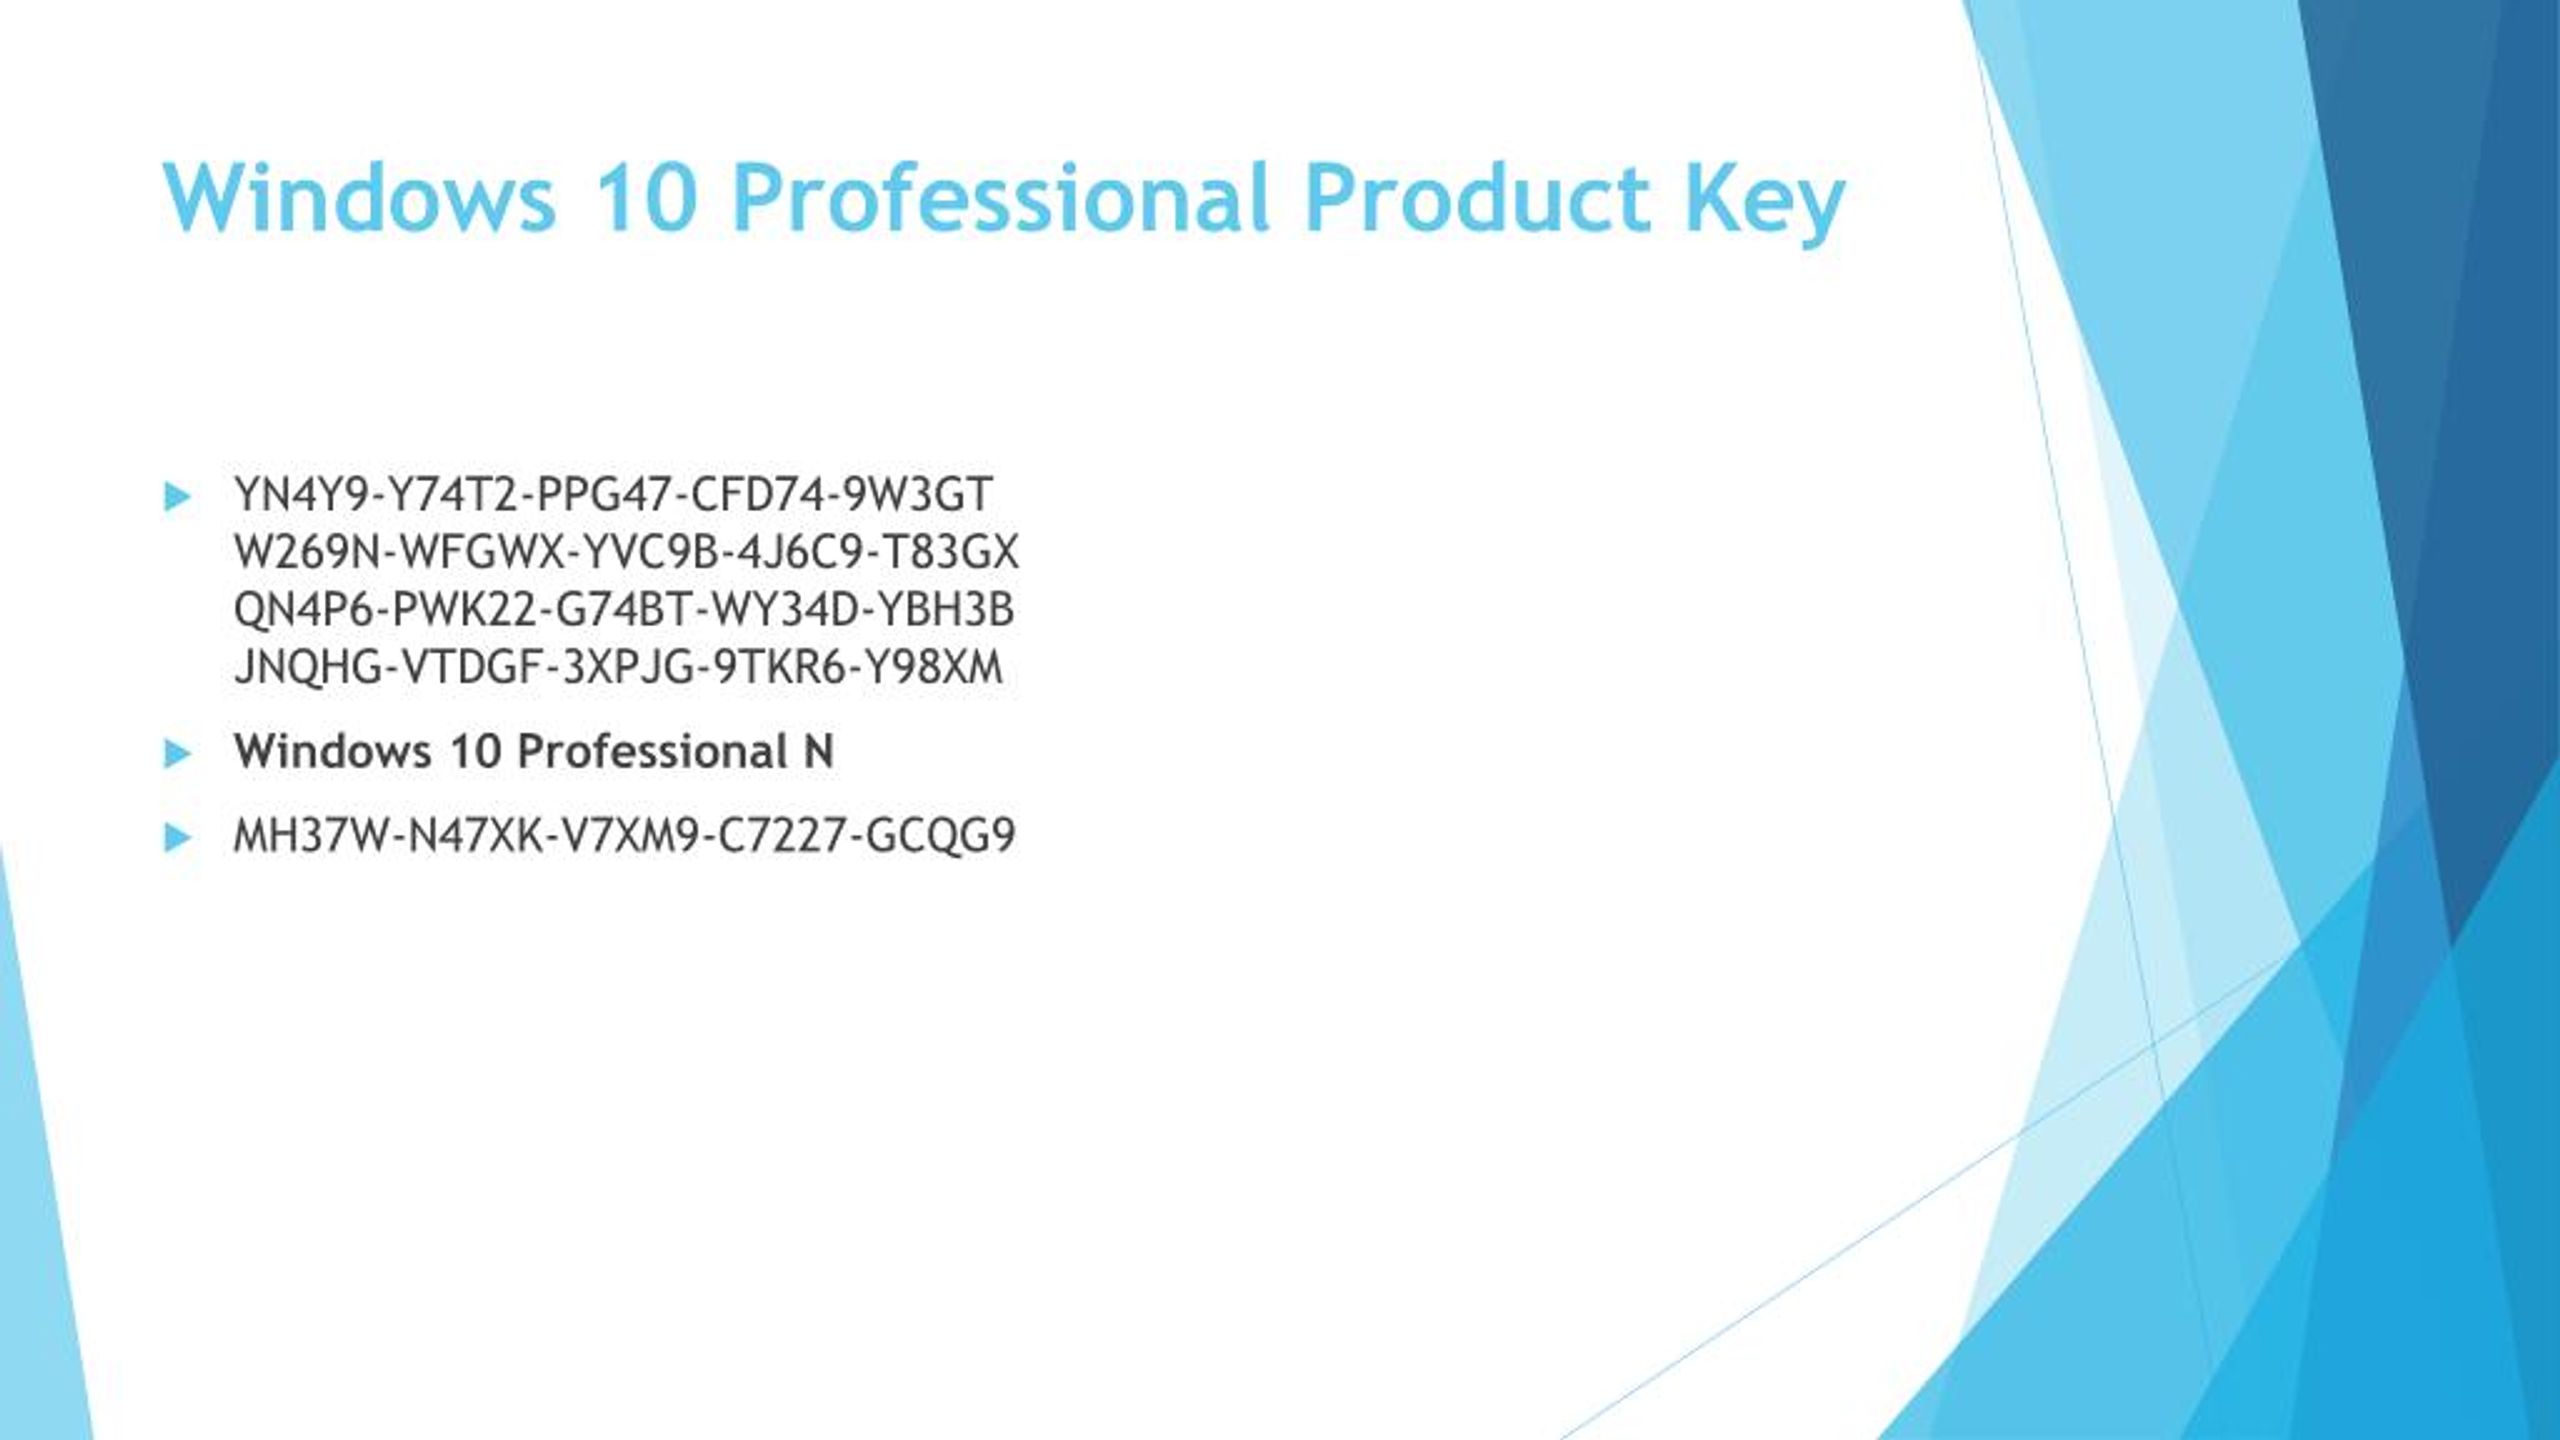 aktivasi windows 10 pro product key 2018